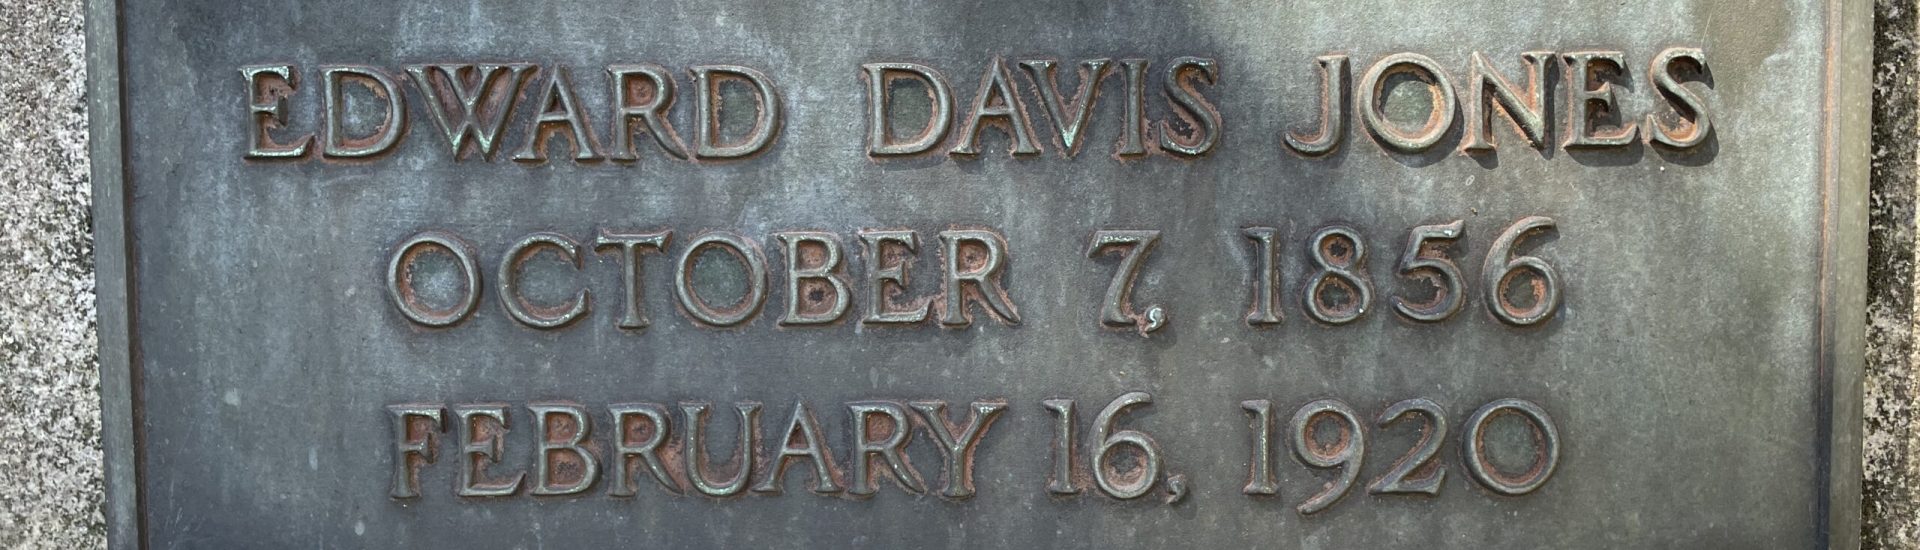 Edward Davis Jones